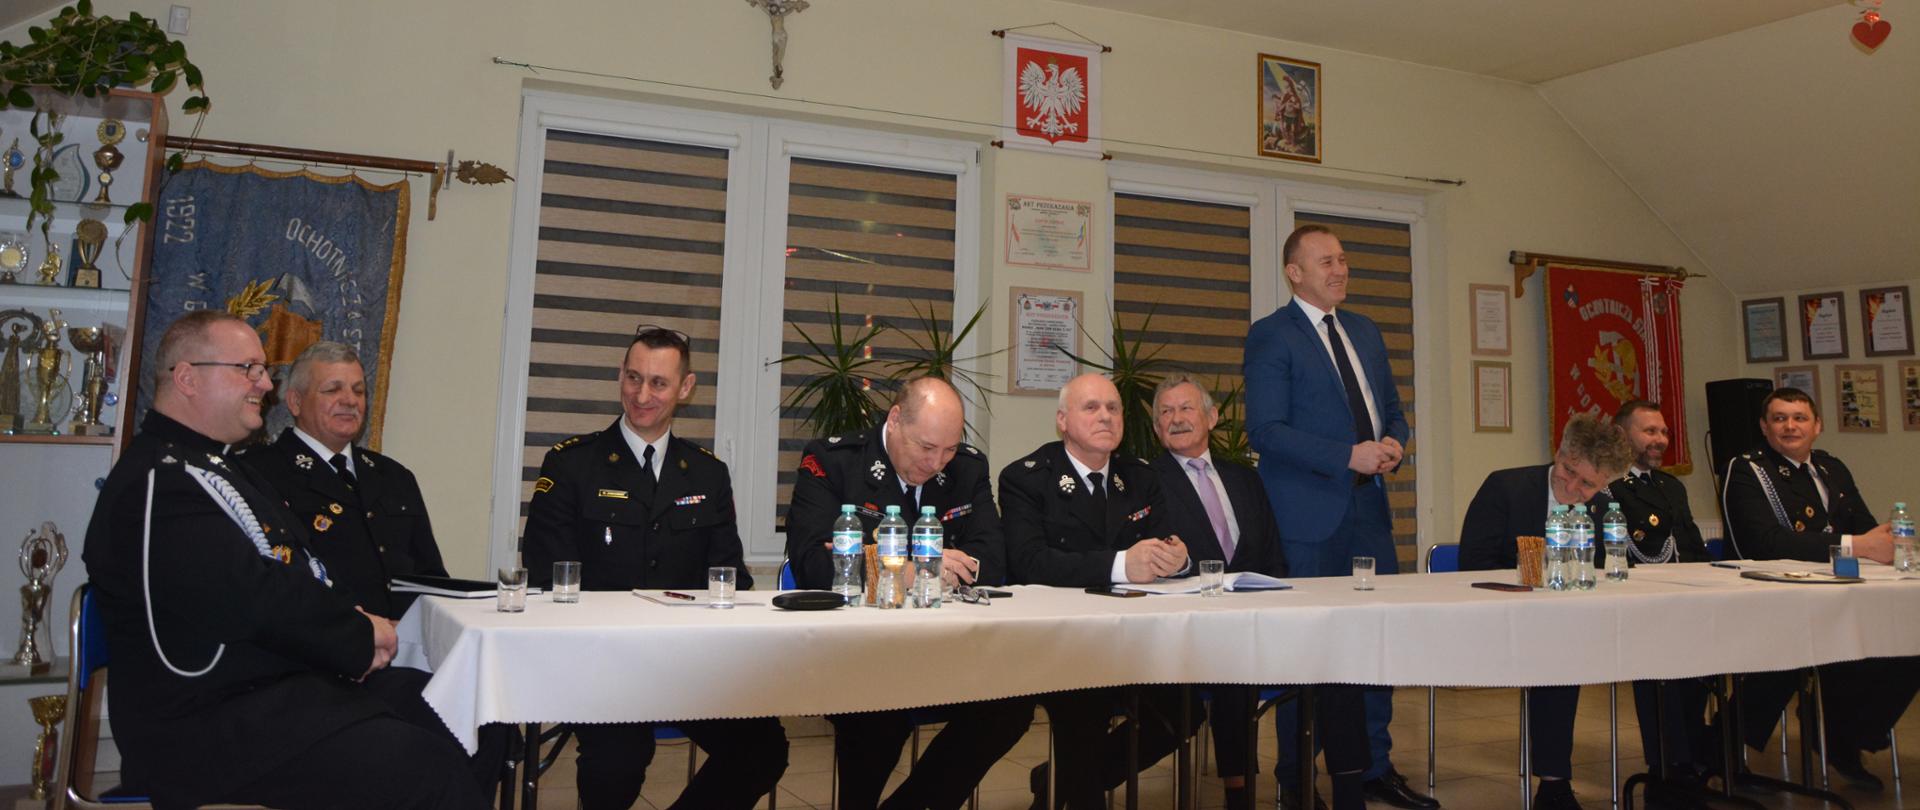 Zdjęcie przedstawia organizatorów i gości siedzący przy stole podczas spotkania sprawozdawczego Ochotniczej Straży Pożarnej w Górnie.